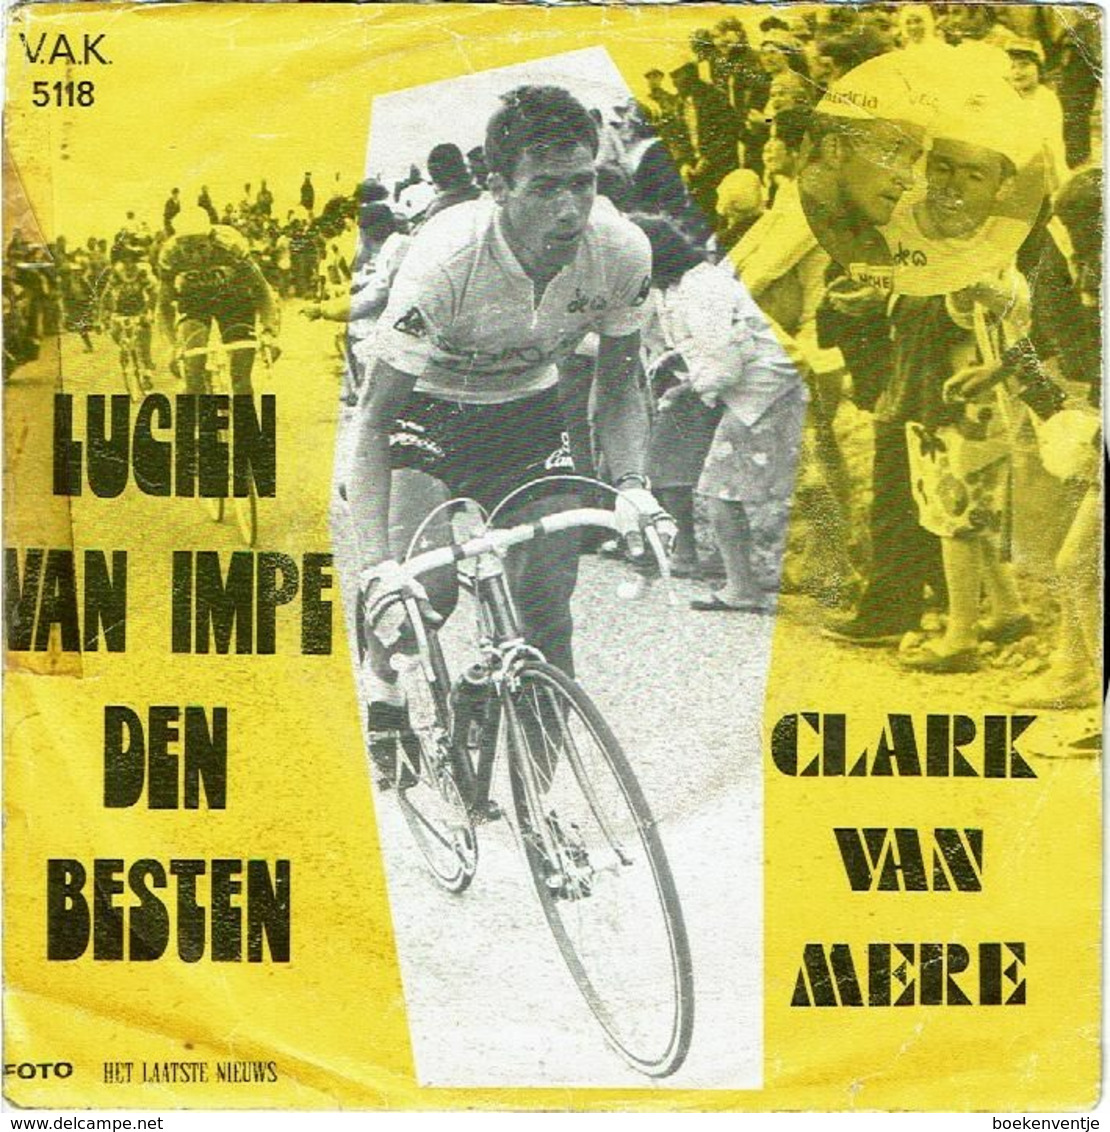 Lucien Van Impe Den Besten - Freddy Maertens In 't Groen Door Clak Van Mere - Sonstige - Niederländische Musik